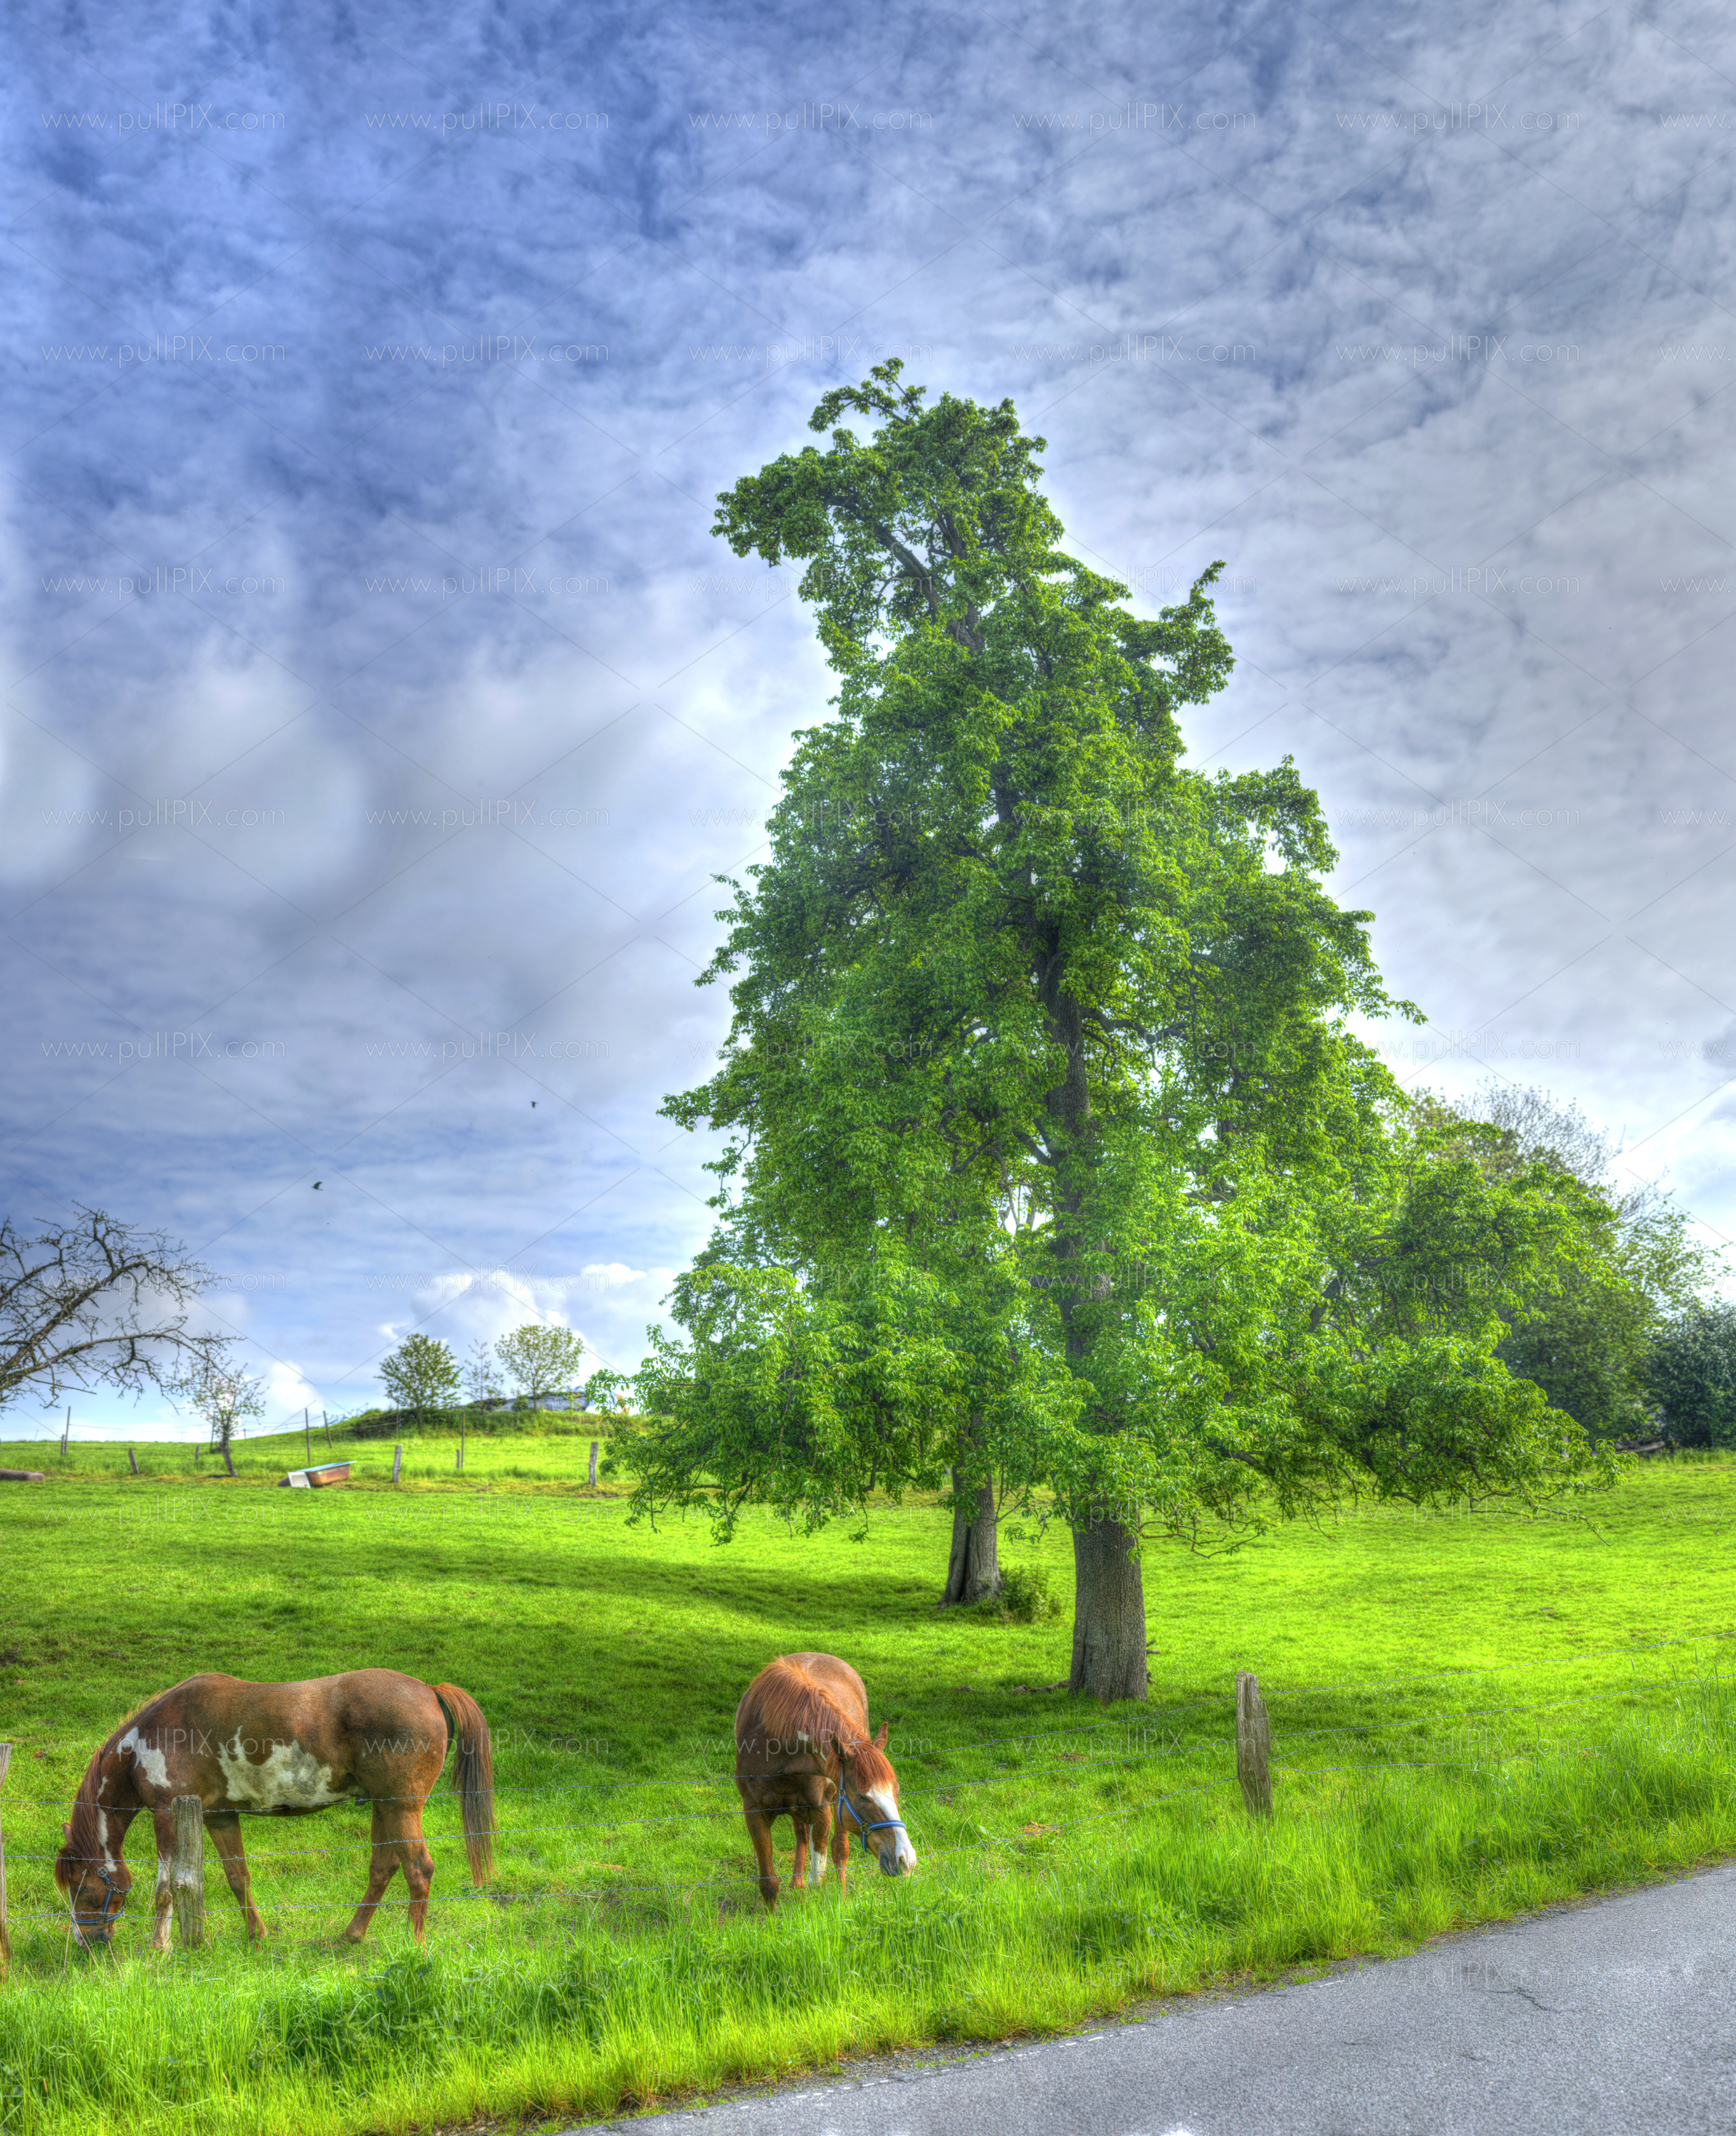 Preview Pferde und Baum malerisch 2.jpg